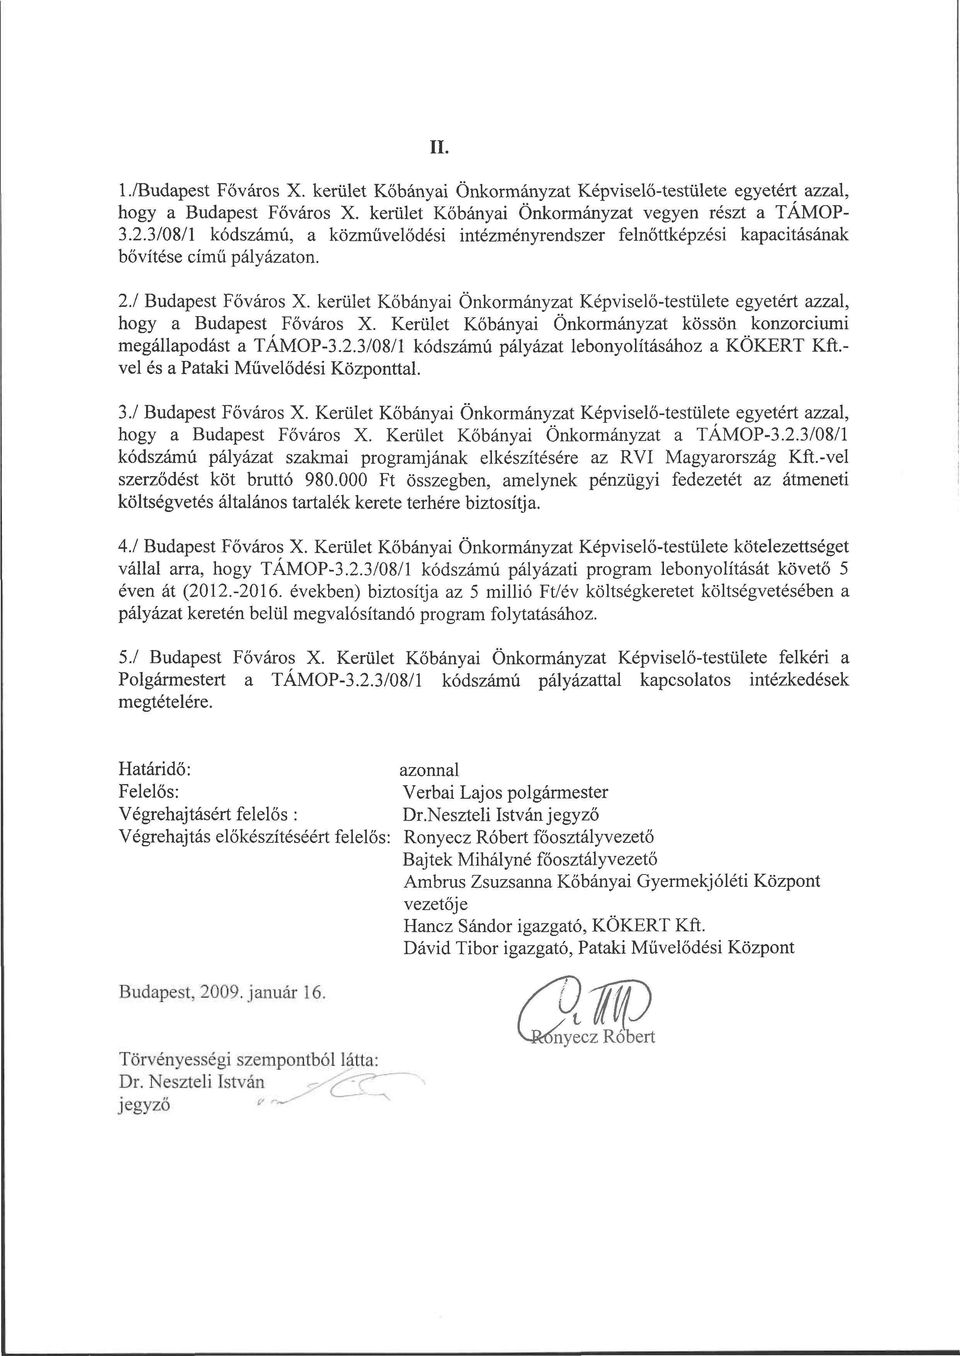 kerület Kőbányai Önkormányzat Képviselő-testülete egyetért azzal, hogy a Budapest Főváros X. Kerület Kőbányai Önkormányzat kössön konzorciumi megállapodást a TÁMOP-3.2.